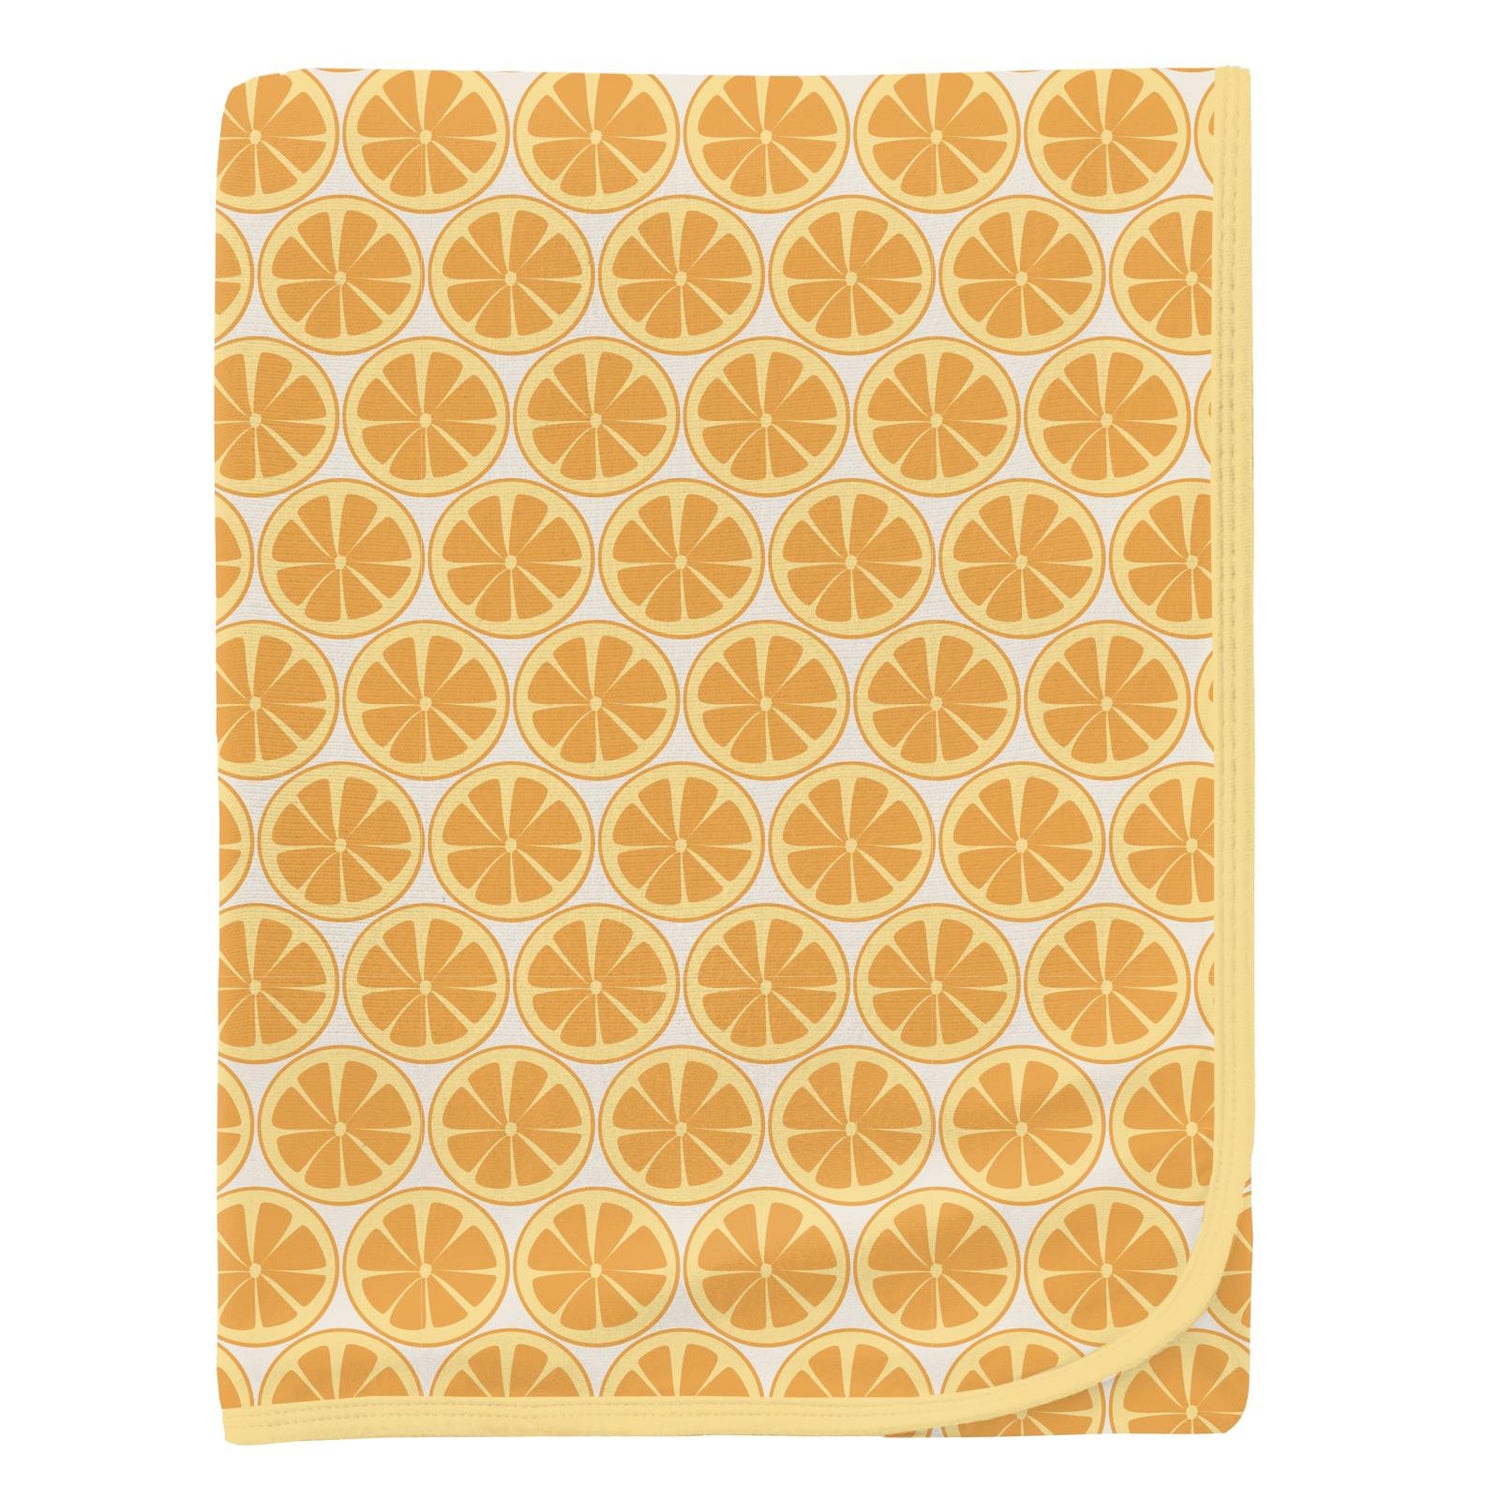 Print Swaddling Blanket in Natural Lemons